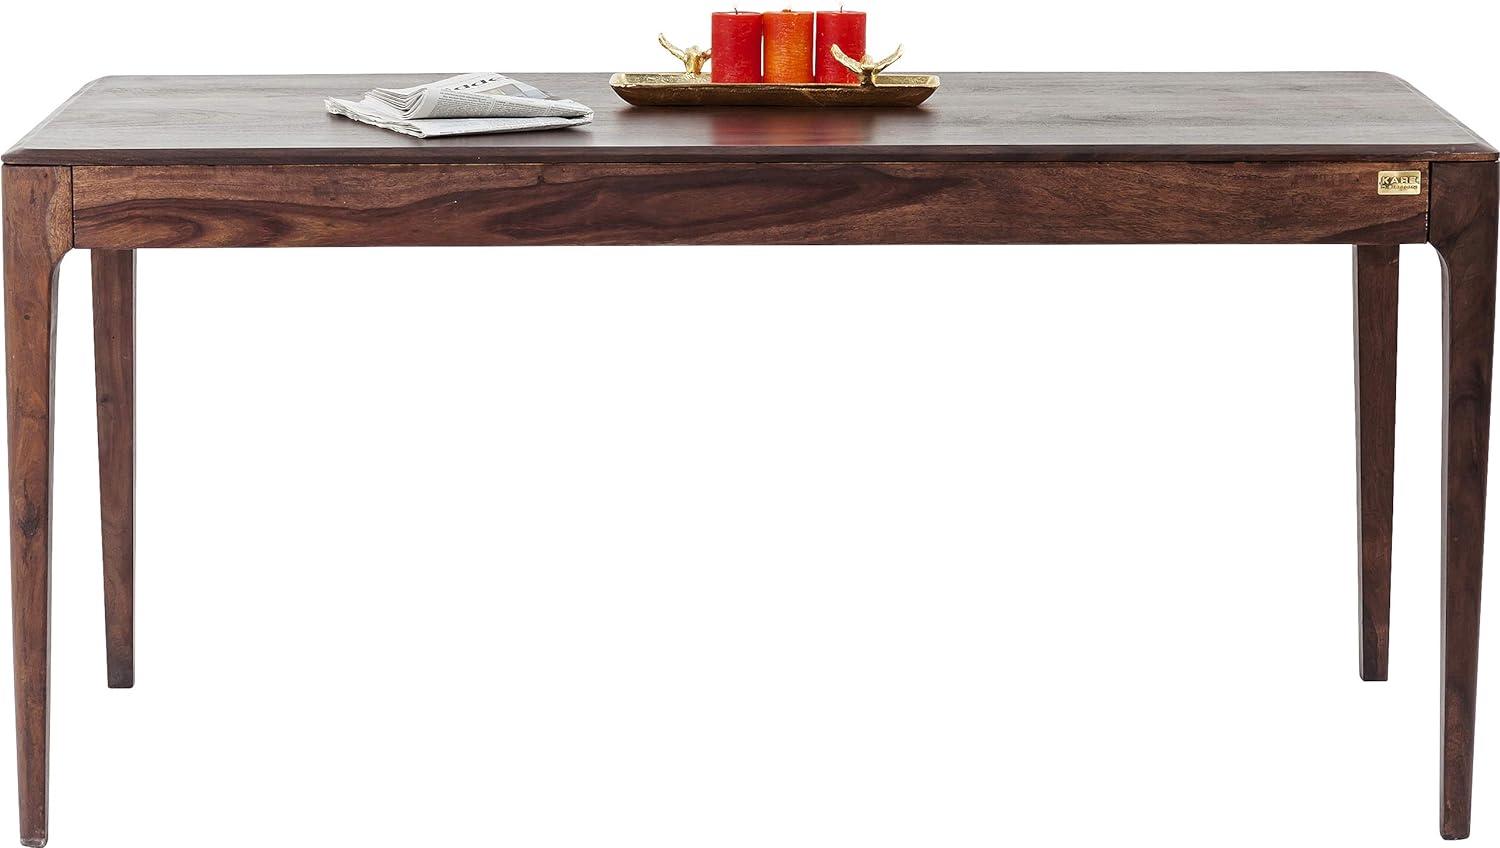 Kare Design Brooklyn Walnut Tisch, Esszimmertisch aus Massivem Sheesham-Holz, Dunkelbraun gebeizte Esstisch, (H/B/T) 76 x 175 x 90 cm, eiche Bild 1